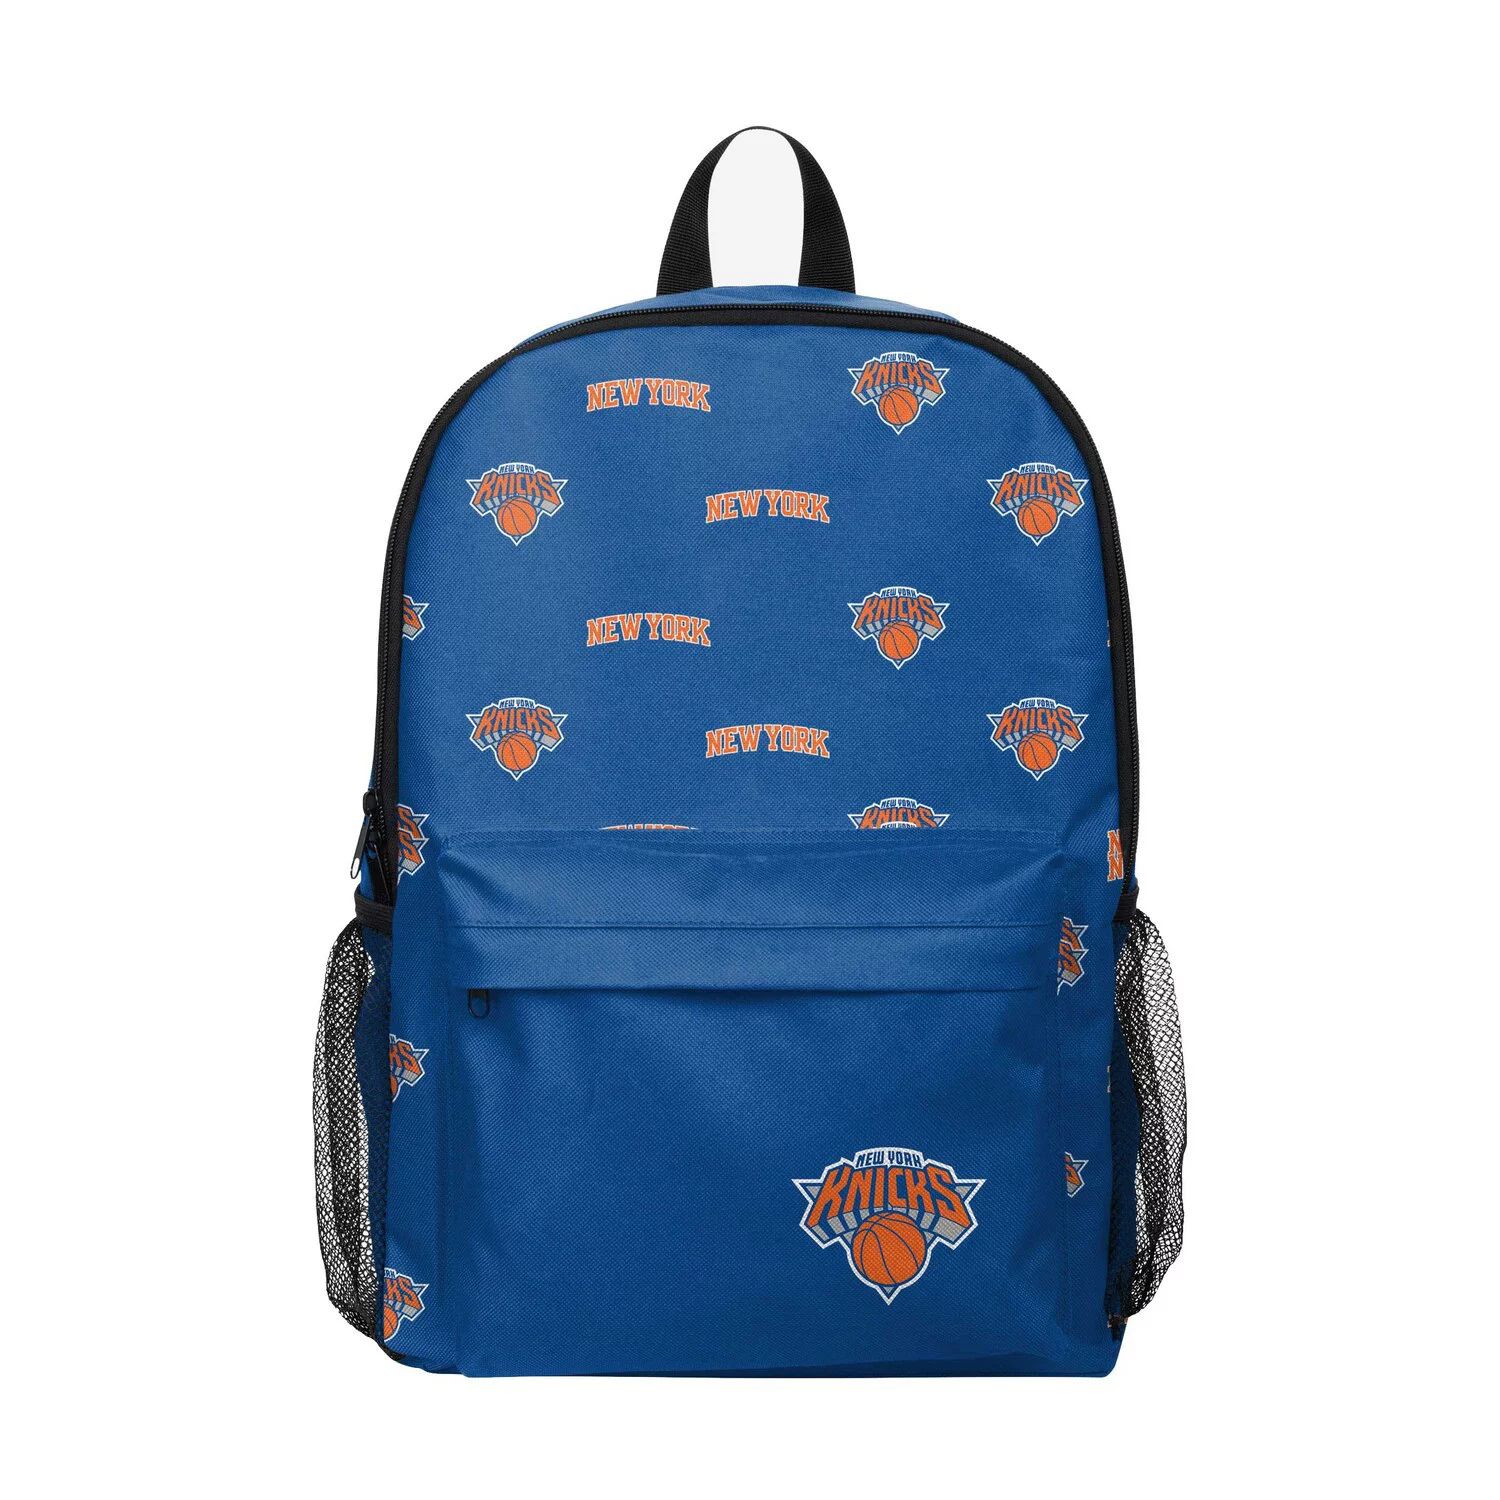 Рюкзак FOCO New York Knicks с повторяющимся логотипом